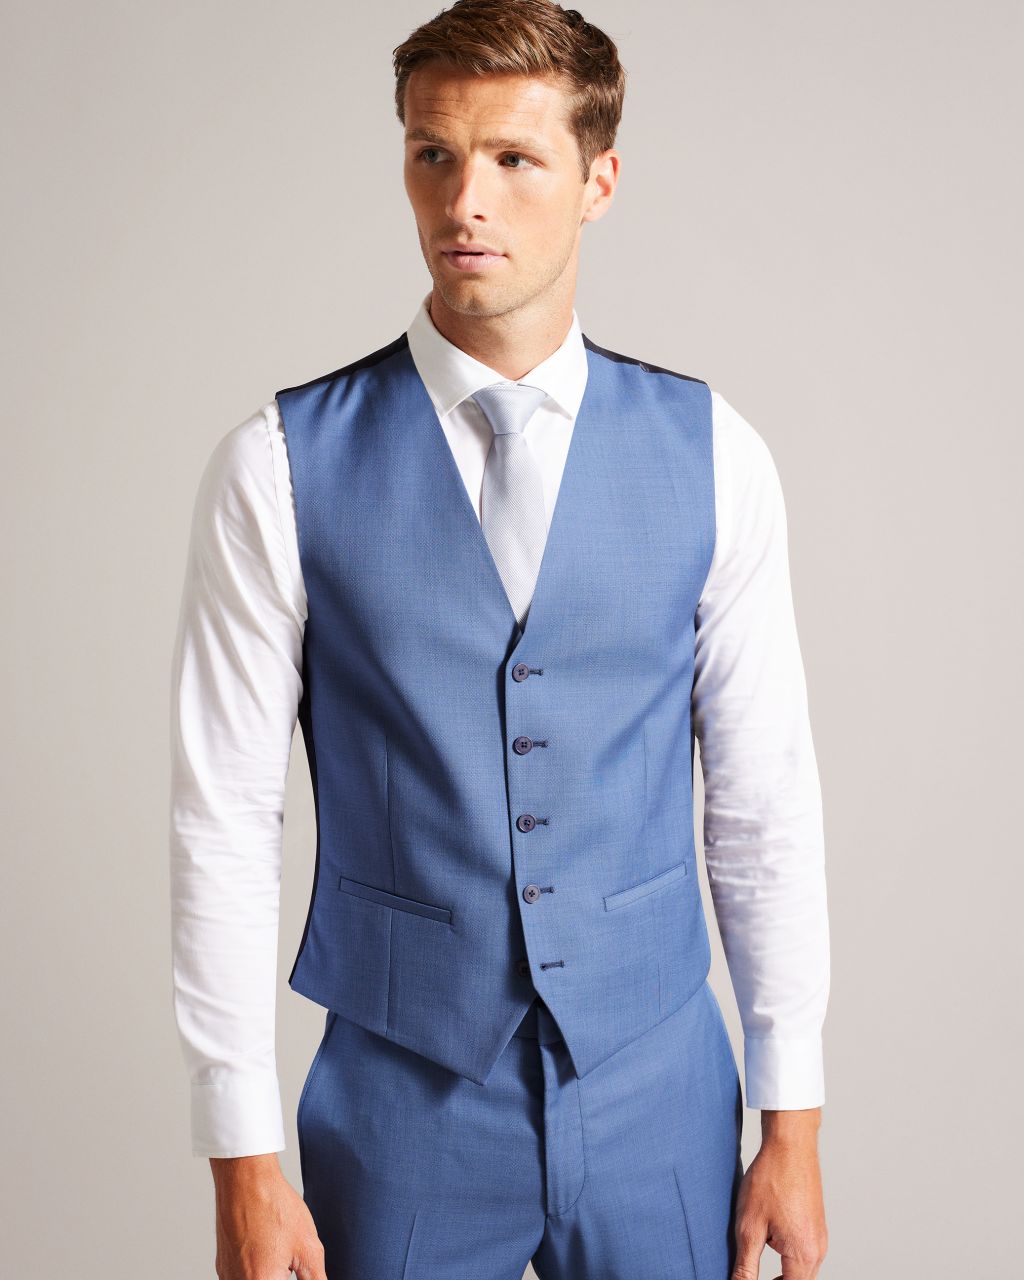 men's wool waistcoat in blue, dorsews